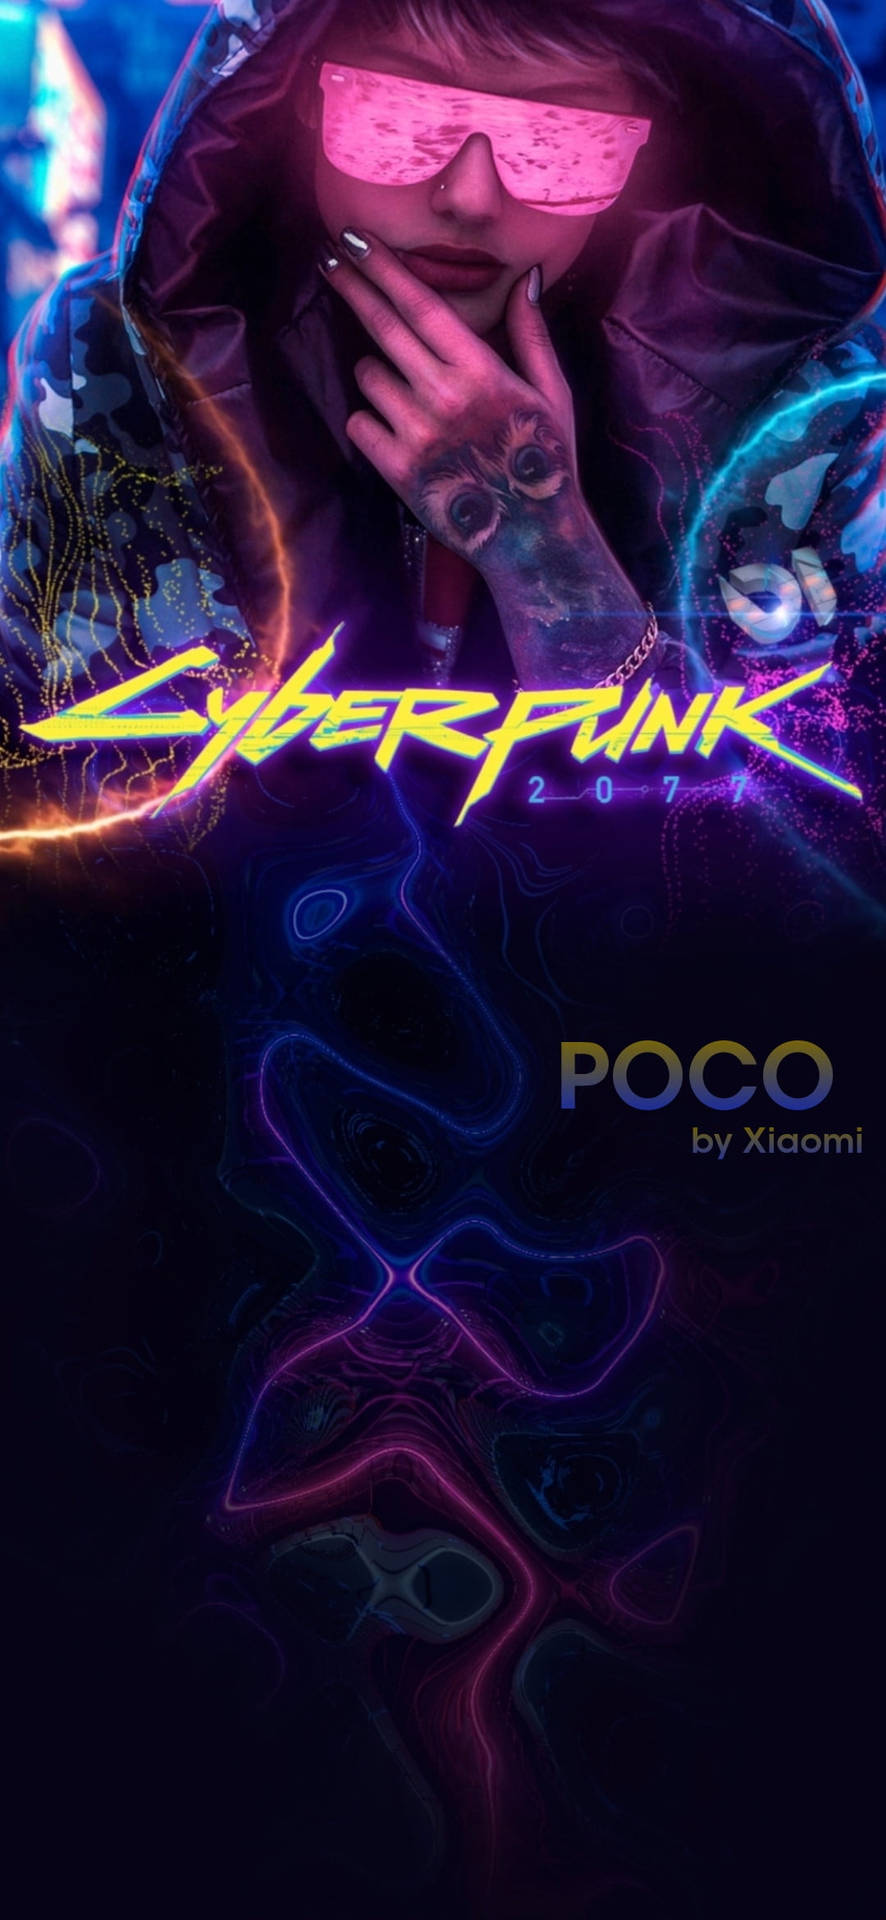 Poco X2 Cyberpunk By Xiaomi